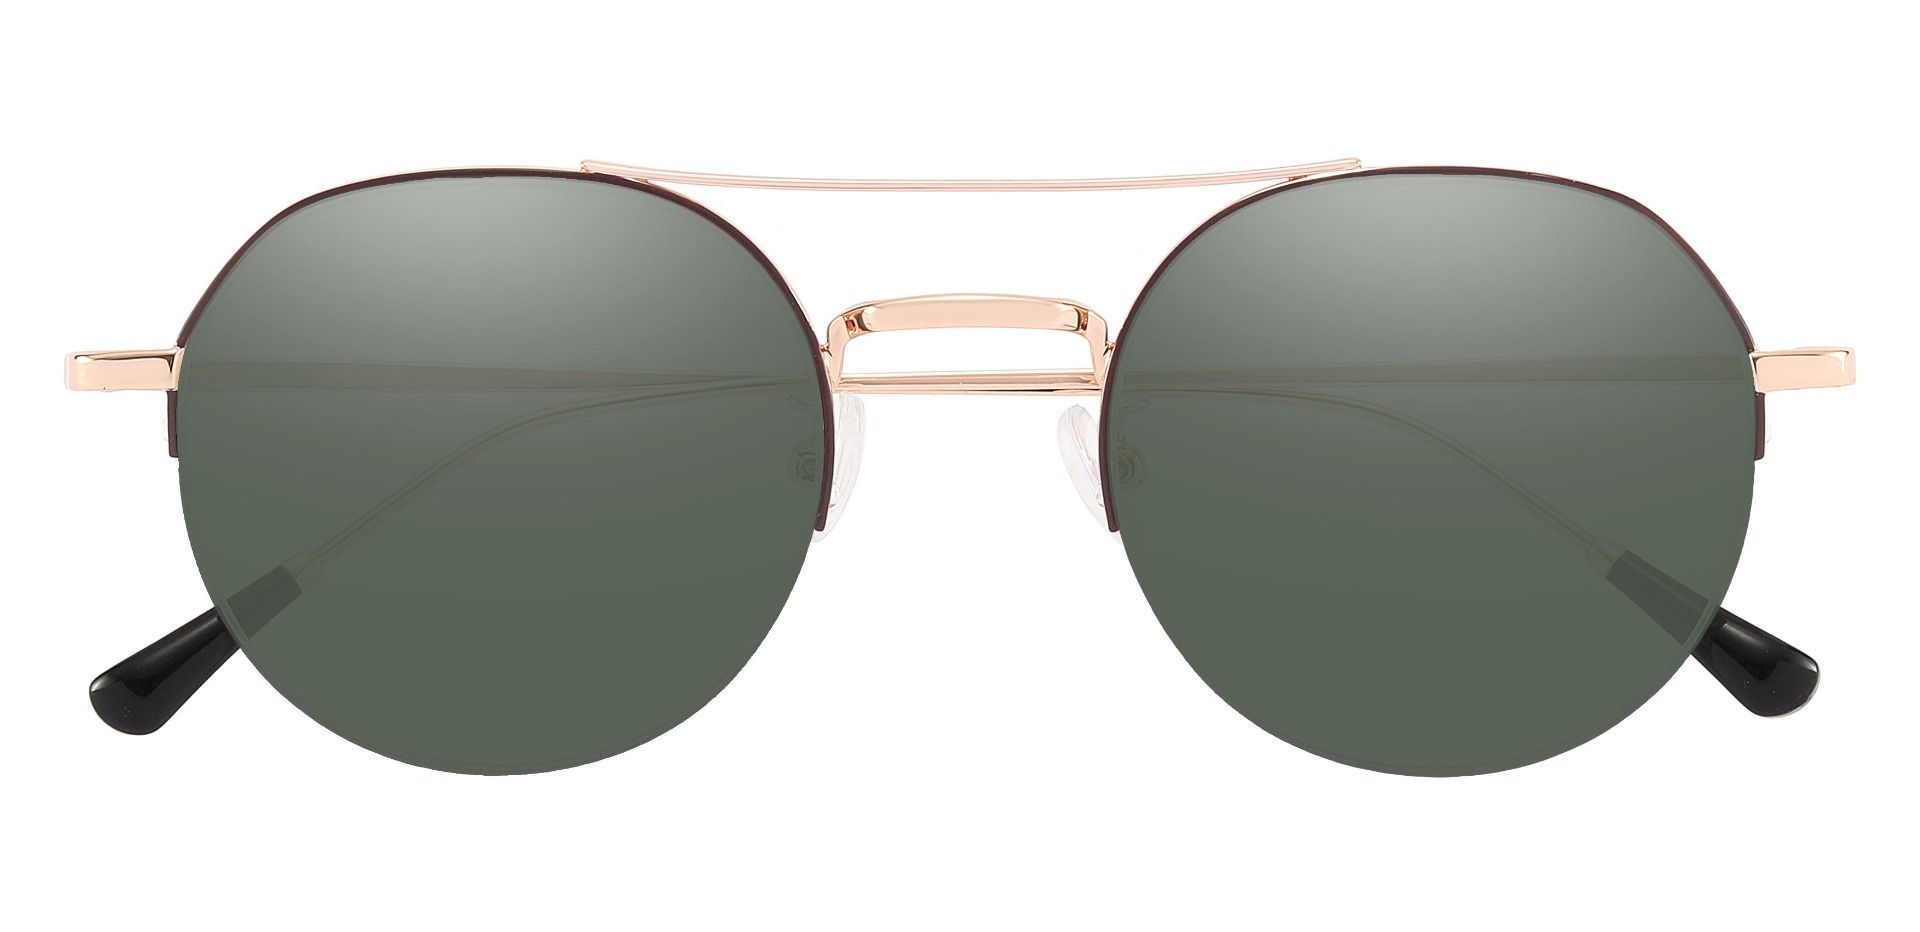 Tuxedo Aviator Lined Bifocal Sunglasses - Gold Frame With Green Lenses